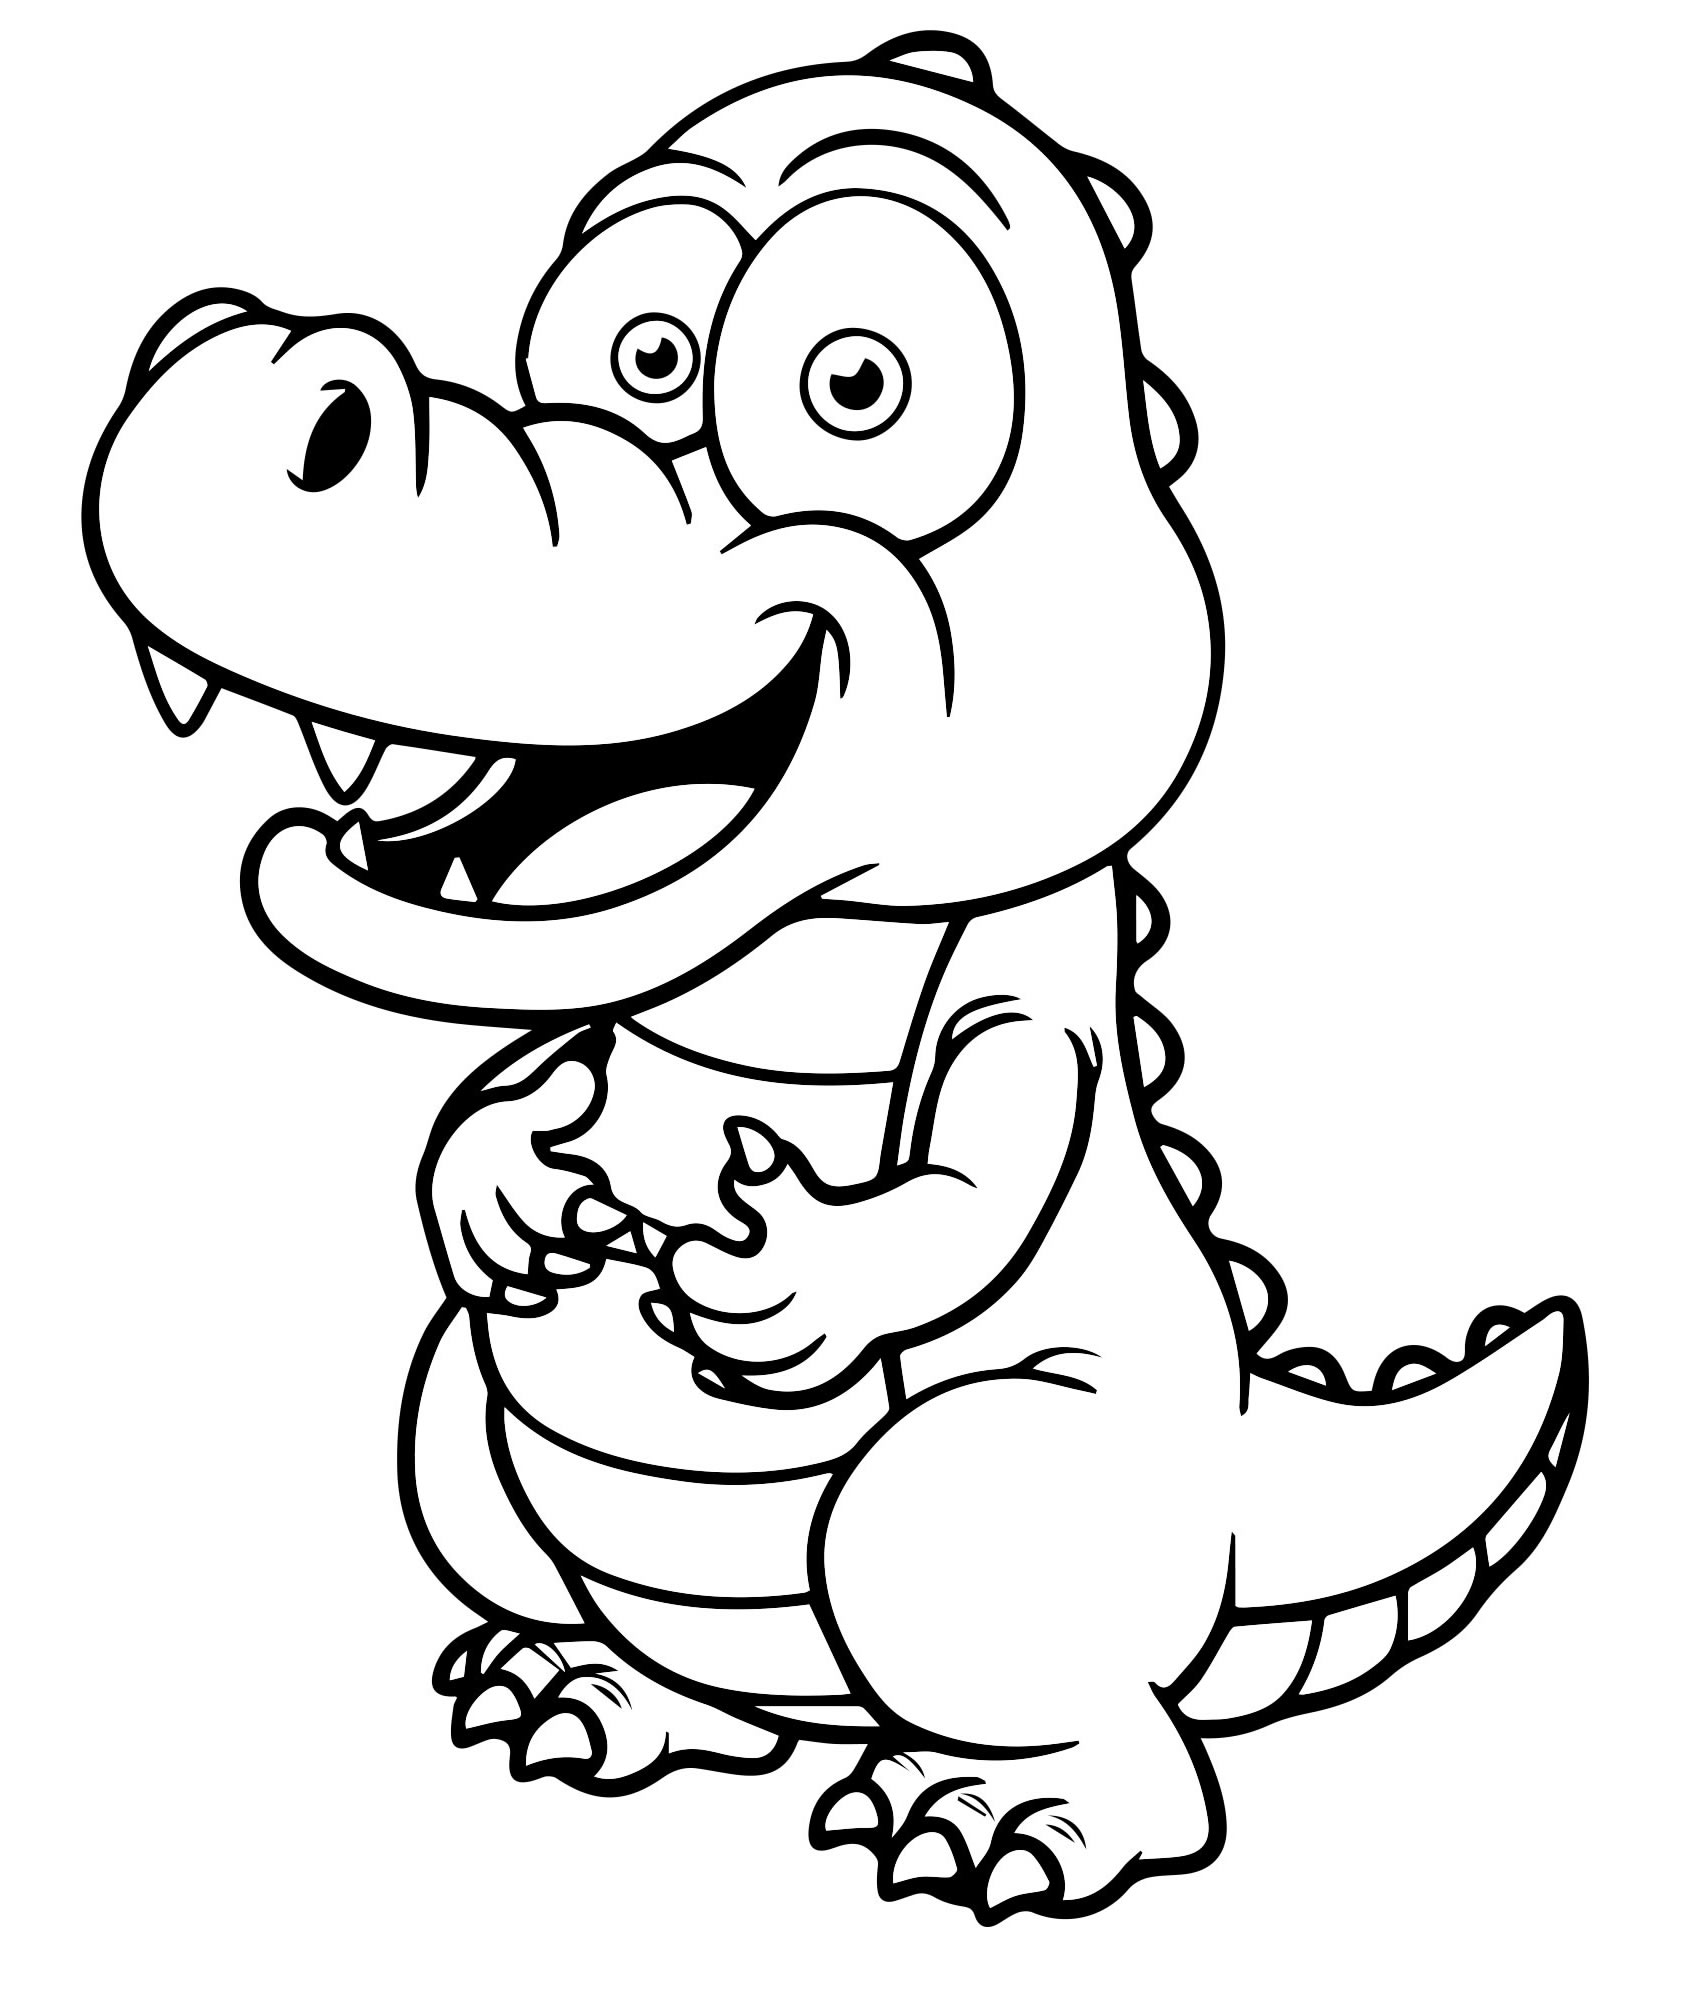 Крокодил раскраска для детей мультяшный